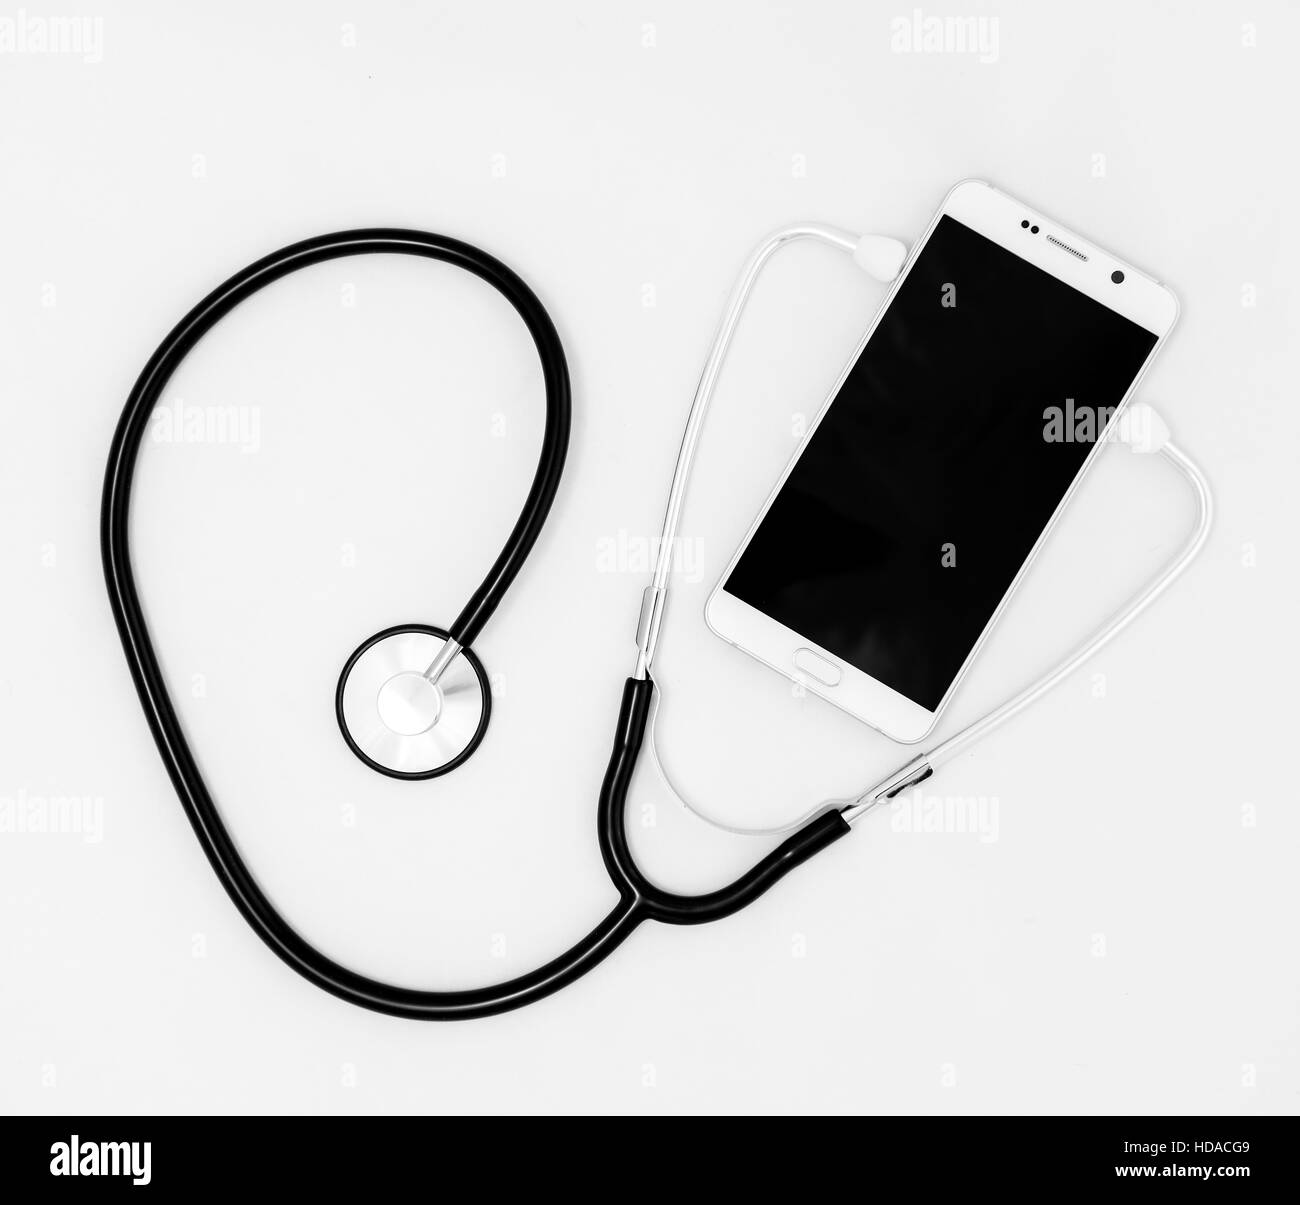 Stéthoscope médical l'outil sur la surface d'un téléphone intelligent, la composition de l'isolé sur fond blanc Banque D'Images